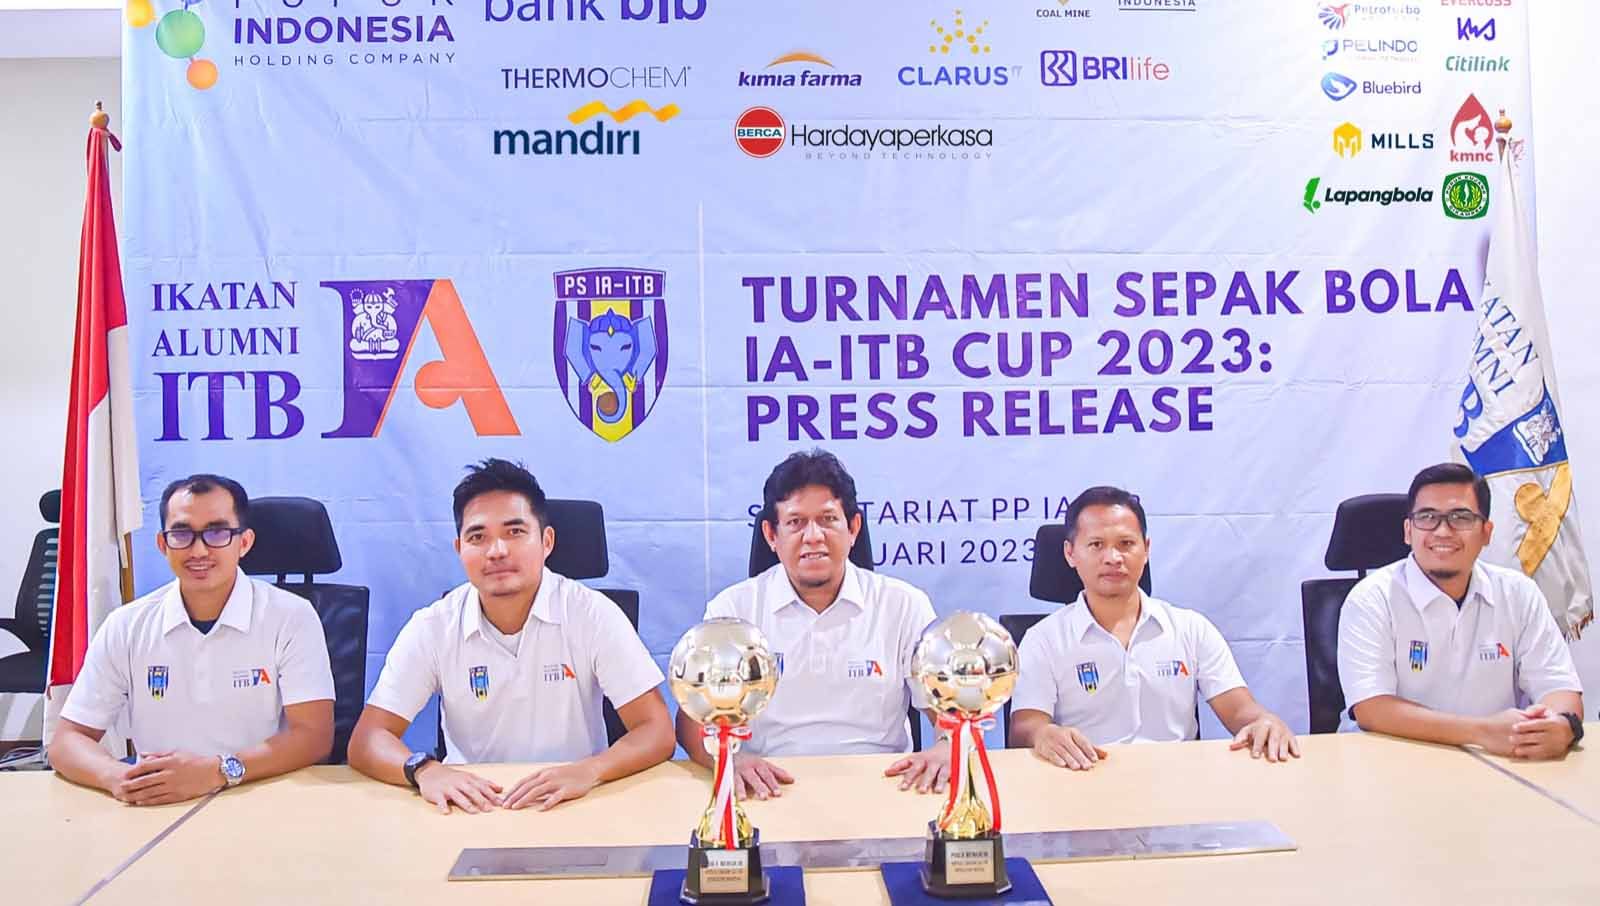 Turnamen Sepak Bola IA-ITB Cup 2023 akan diselenggarakan pada tanggal 4 Februari sampai dengan 12 Maret 2023 di Lapangan C Senayan, Jakarta. (Foto: IA-ITB) Copyright: © IA-ITB